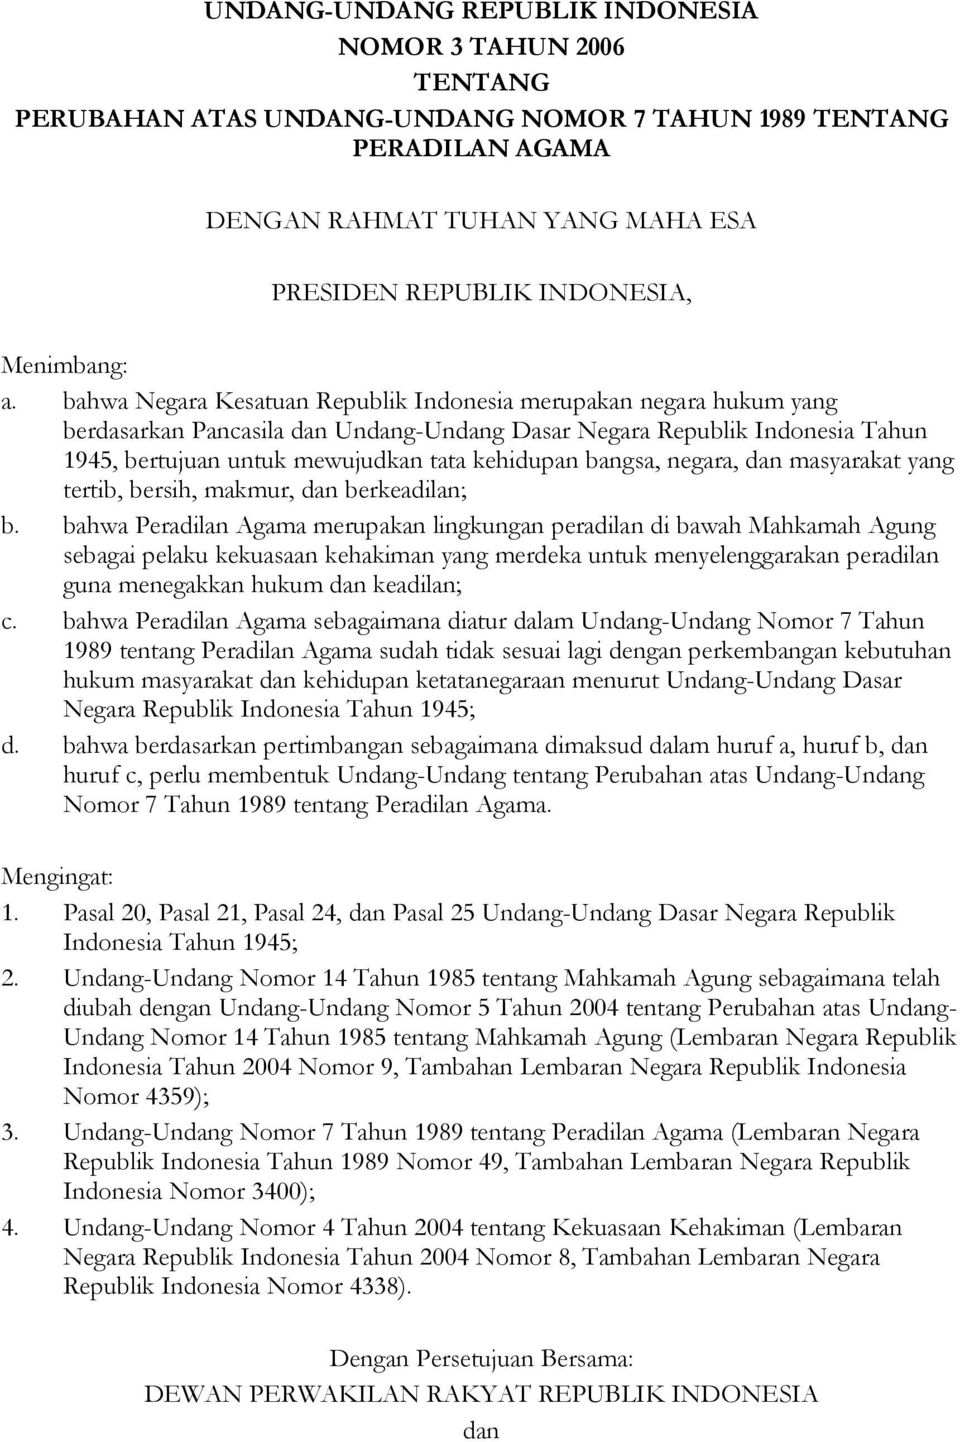 bahwa Negara Kesatuan Republik Indonesia merupakan negara hukum yang berdasarkan Pancasila dan Undang-Undang Dasar Negara Republik Indonesia Tahun 1945, bertujuan untuk mewujudkan tata kehidupan